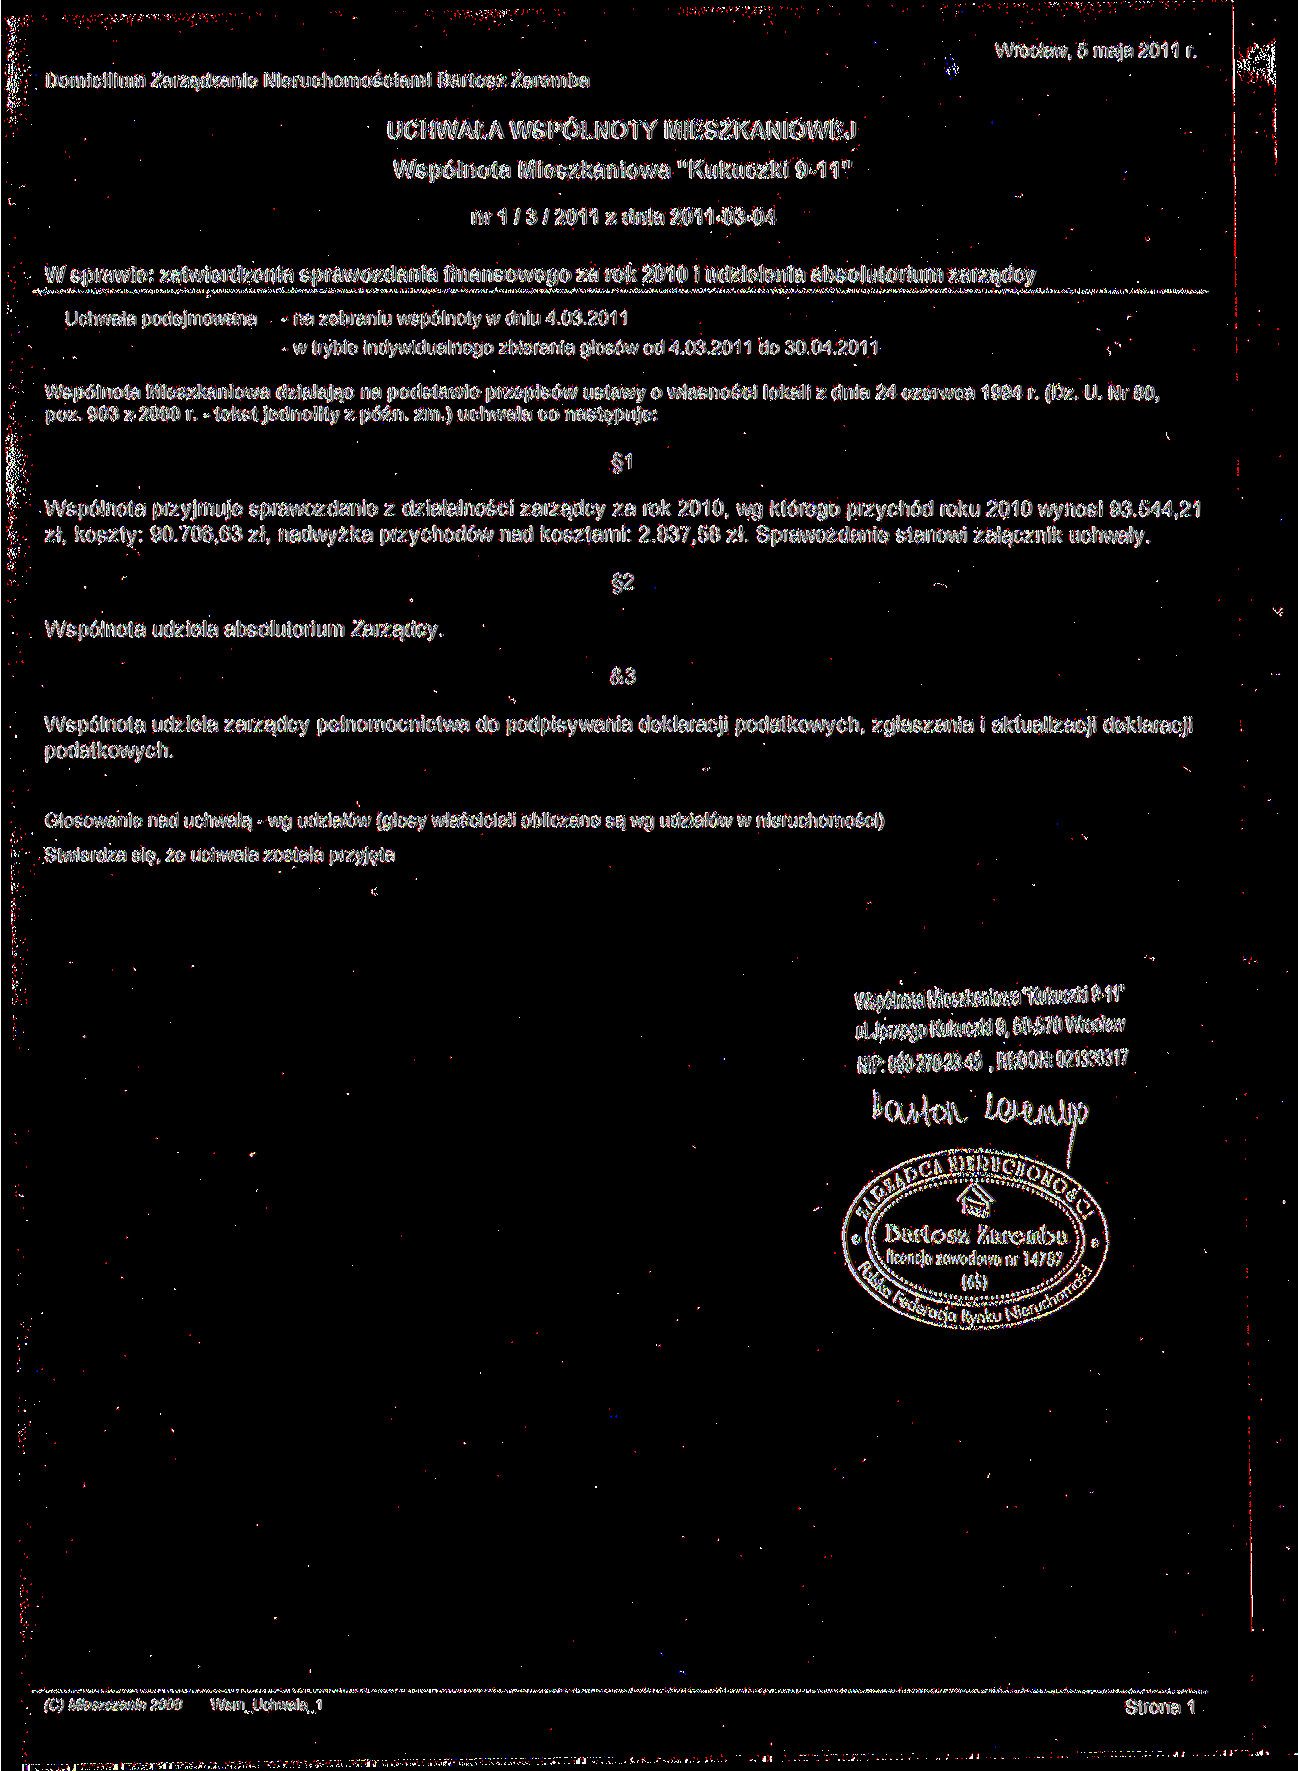 nr 1 / 3 / 2011 z dnia 2011-03-04 W sprawie: zatwierdzenia sprawozdania finansowego za rok 2010 i udzielenia absolutorium zarządcy Wspólnota przyjmuje sprawozdanie z działalności zarządcy za rok